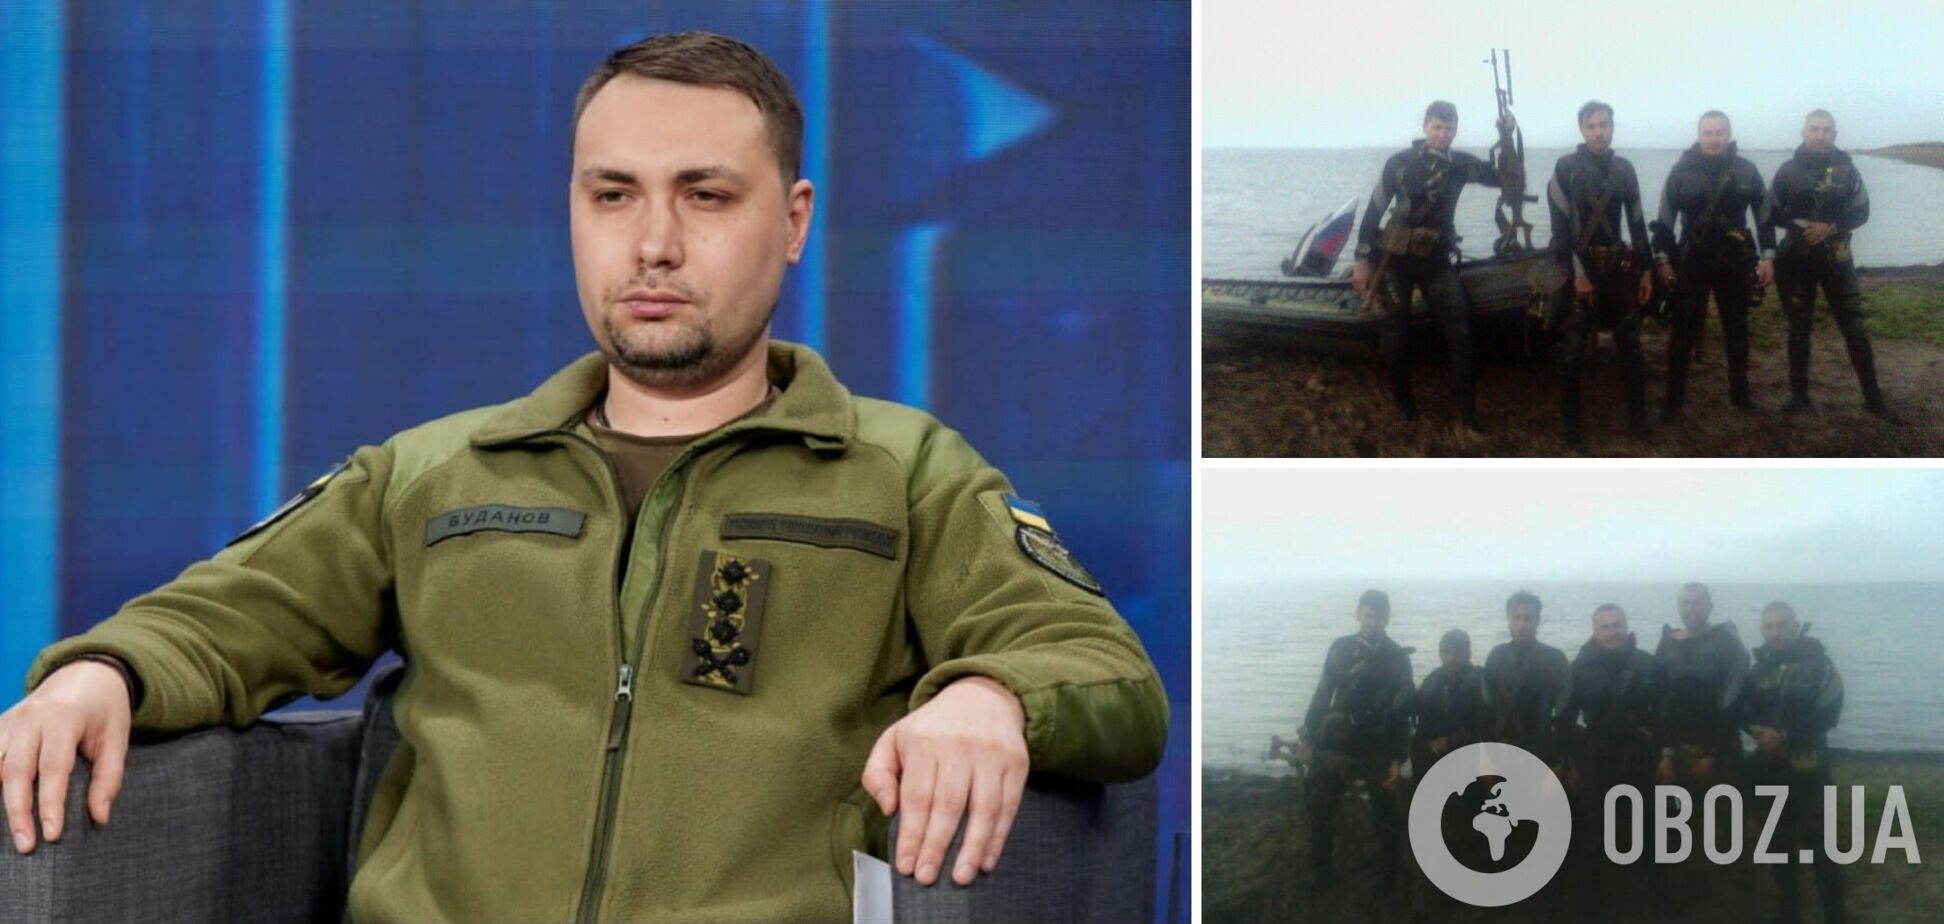 'Более 4-6 часов плыли с гранатами в руках': стало известно новые детали рейда в Крым, который в 2016 году возглавлял Буданов